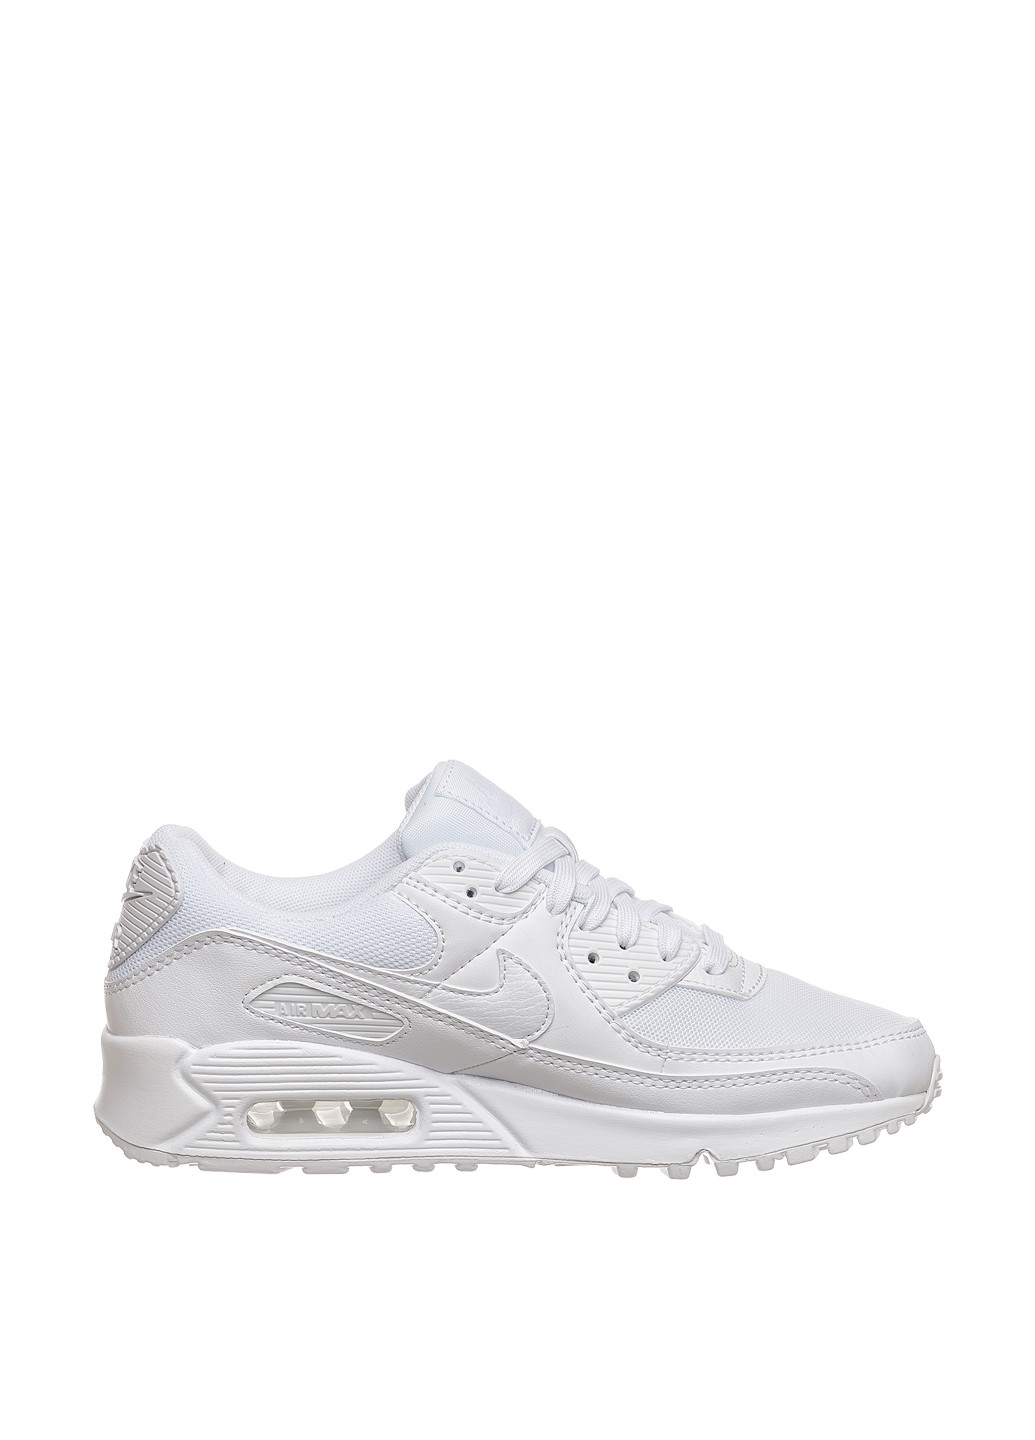 Белые демисезонные кроссовки dh8010-100_2024 Nike WMNS AIR MAX 90